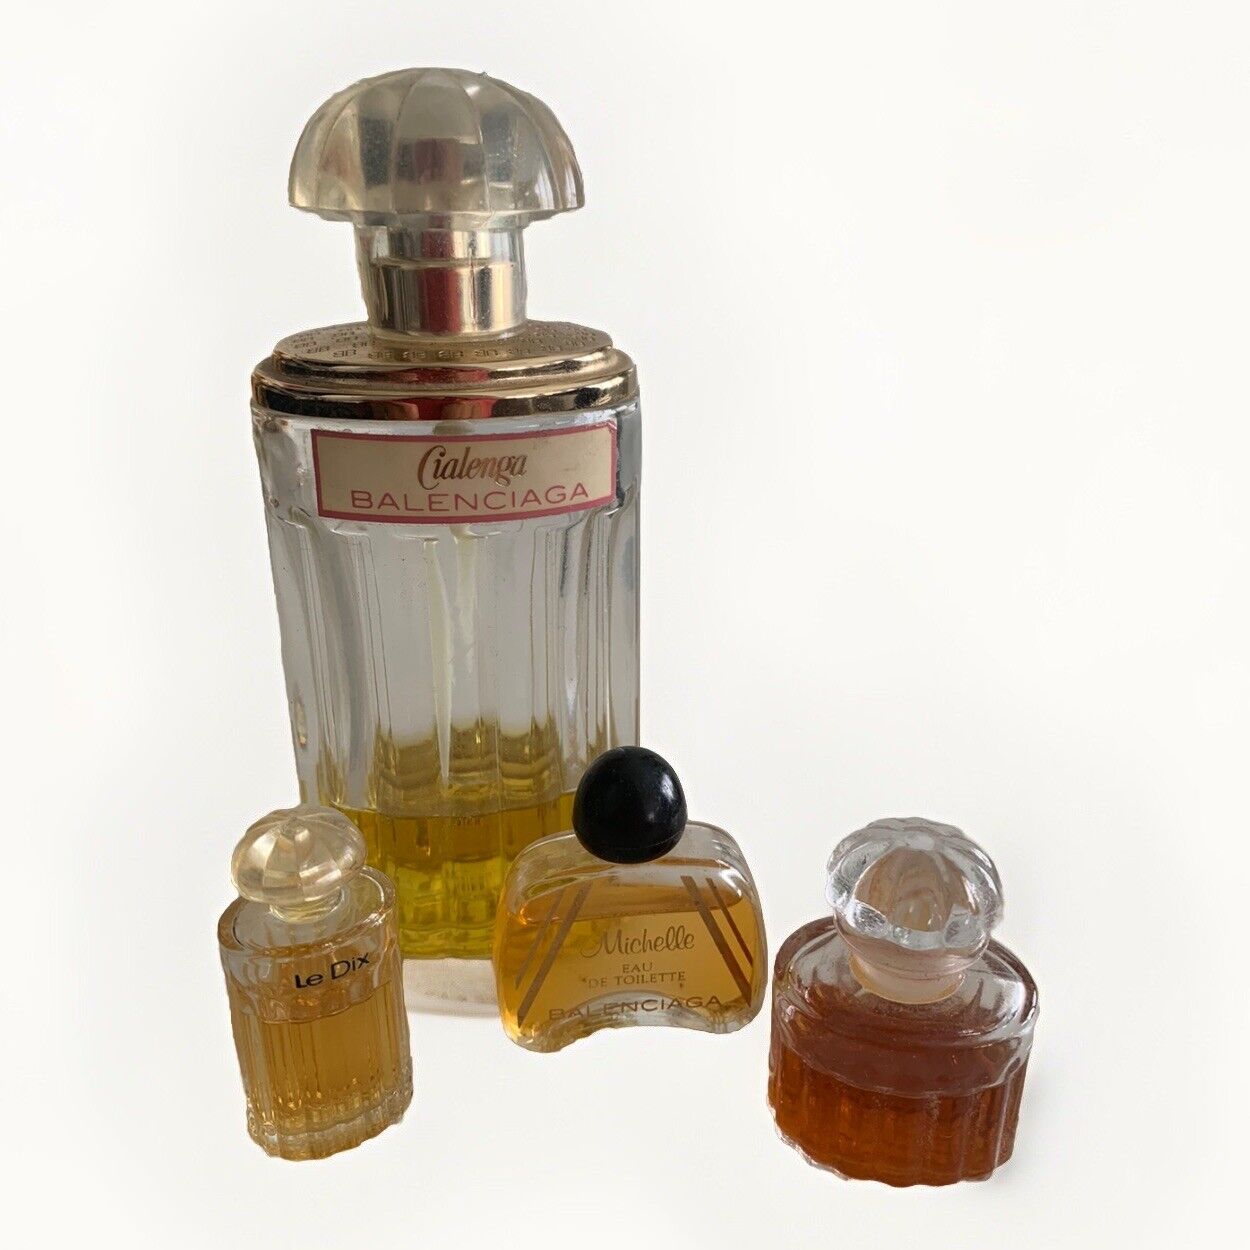 Vintage Perfume Balenciaga Lot of 4 Le Dix Michelle Cialenga